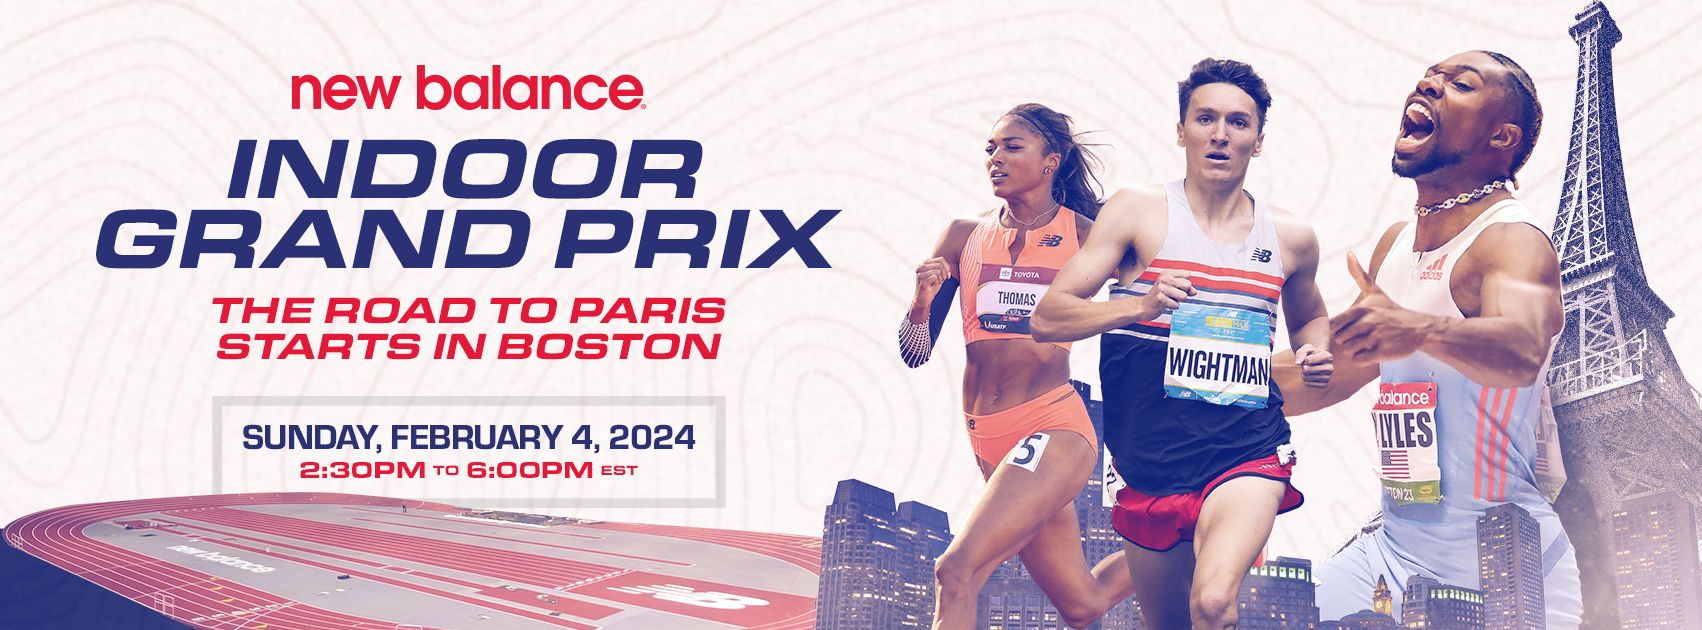 New Balance Indoor Grand Prix 2024 Live, Schedule & TV Details Info